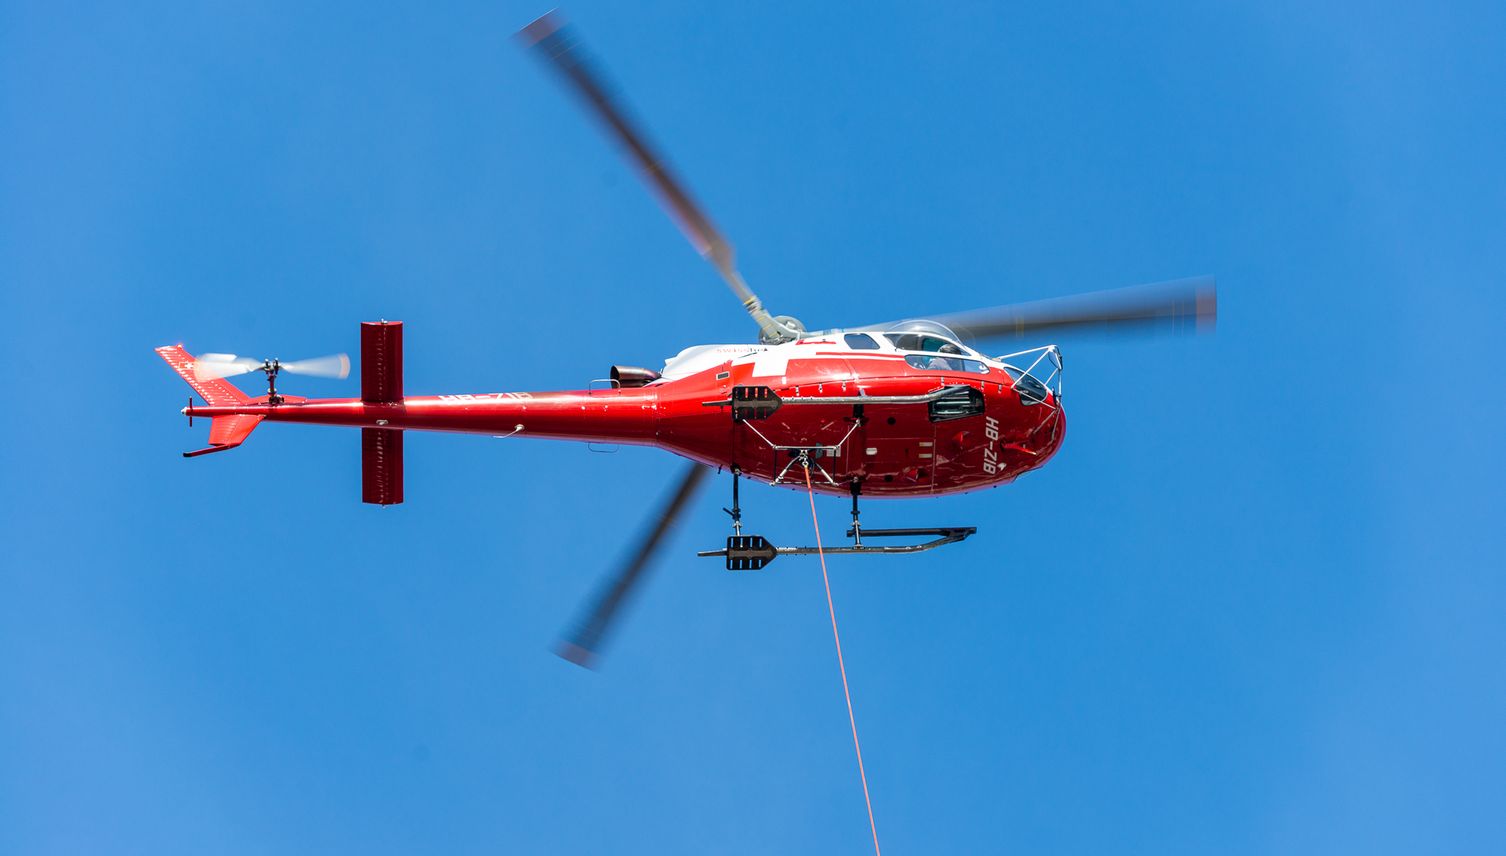 Wegen Baustelle: Helikopter rattert über Luzern